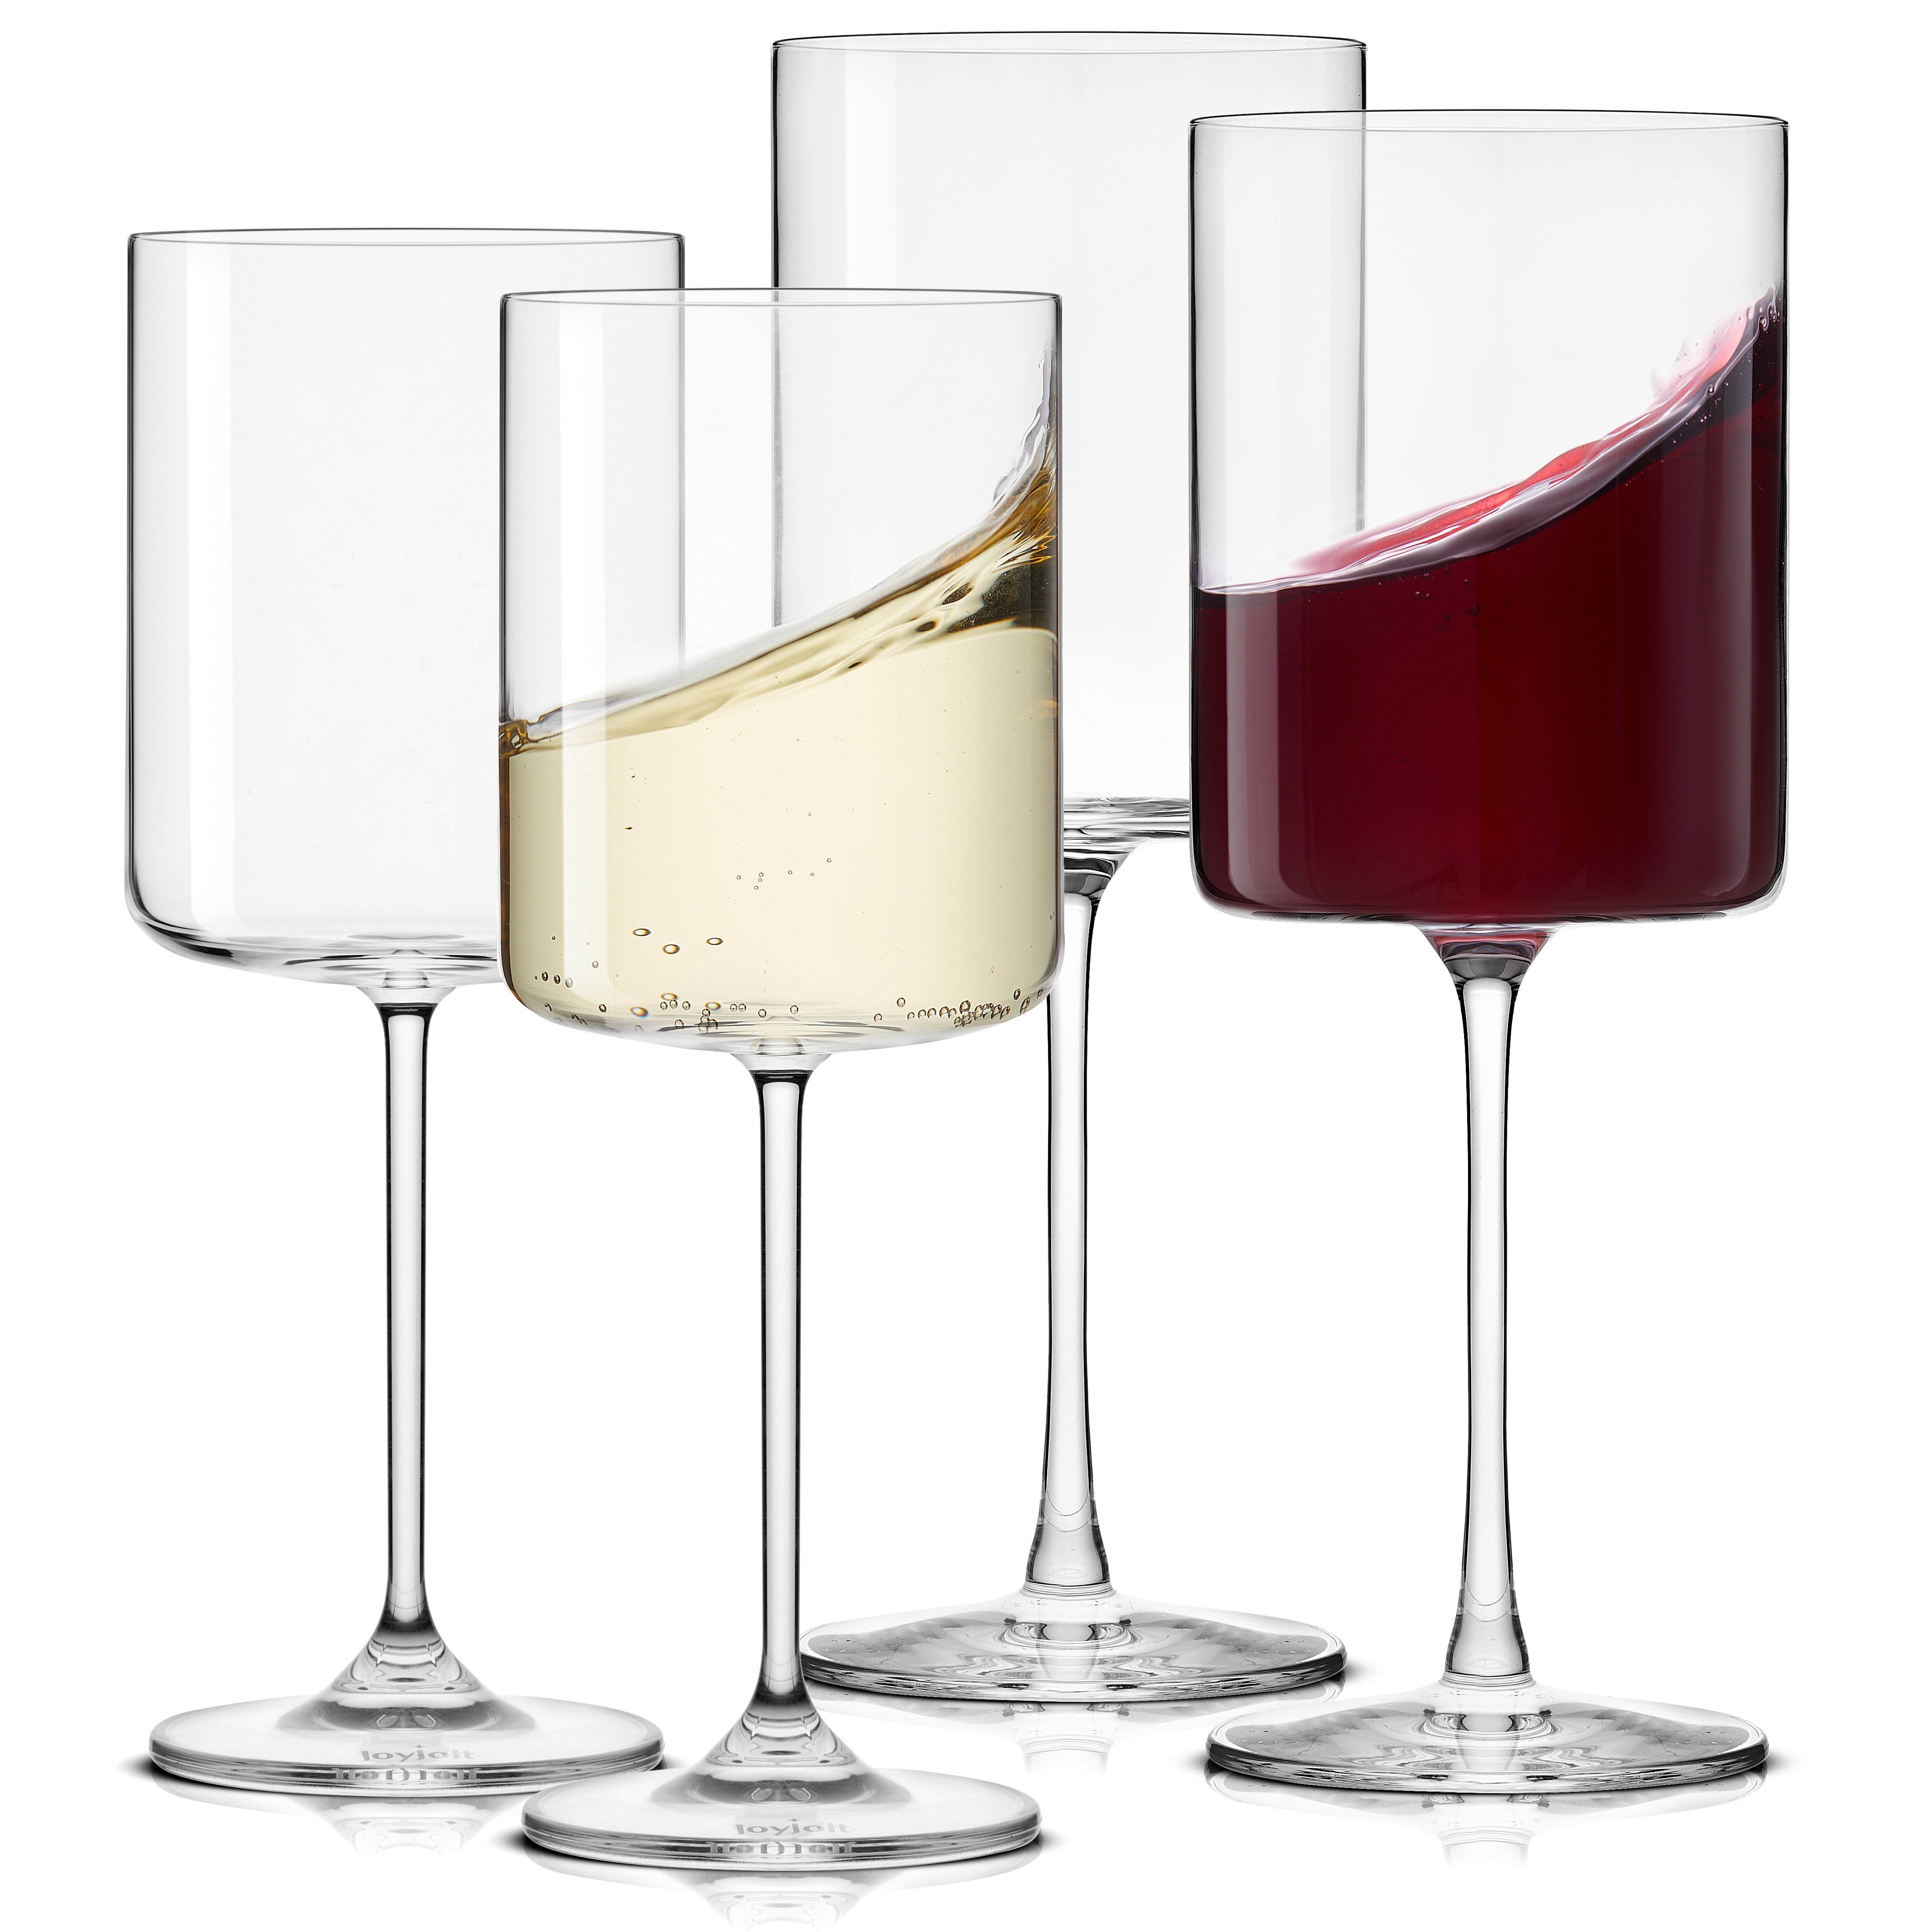 JoyJolt Claire Cyrstal Cylinder Red Wine Glasses - 14 oz - Set of 2